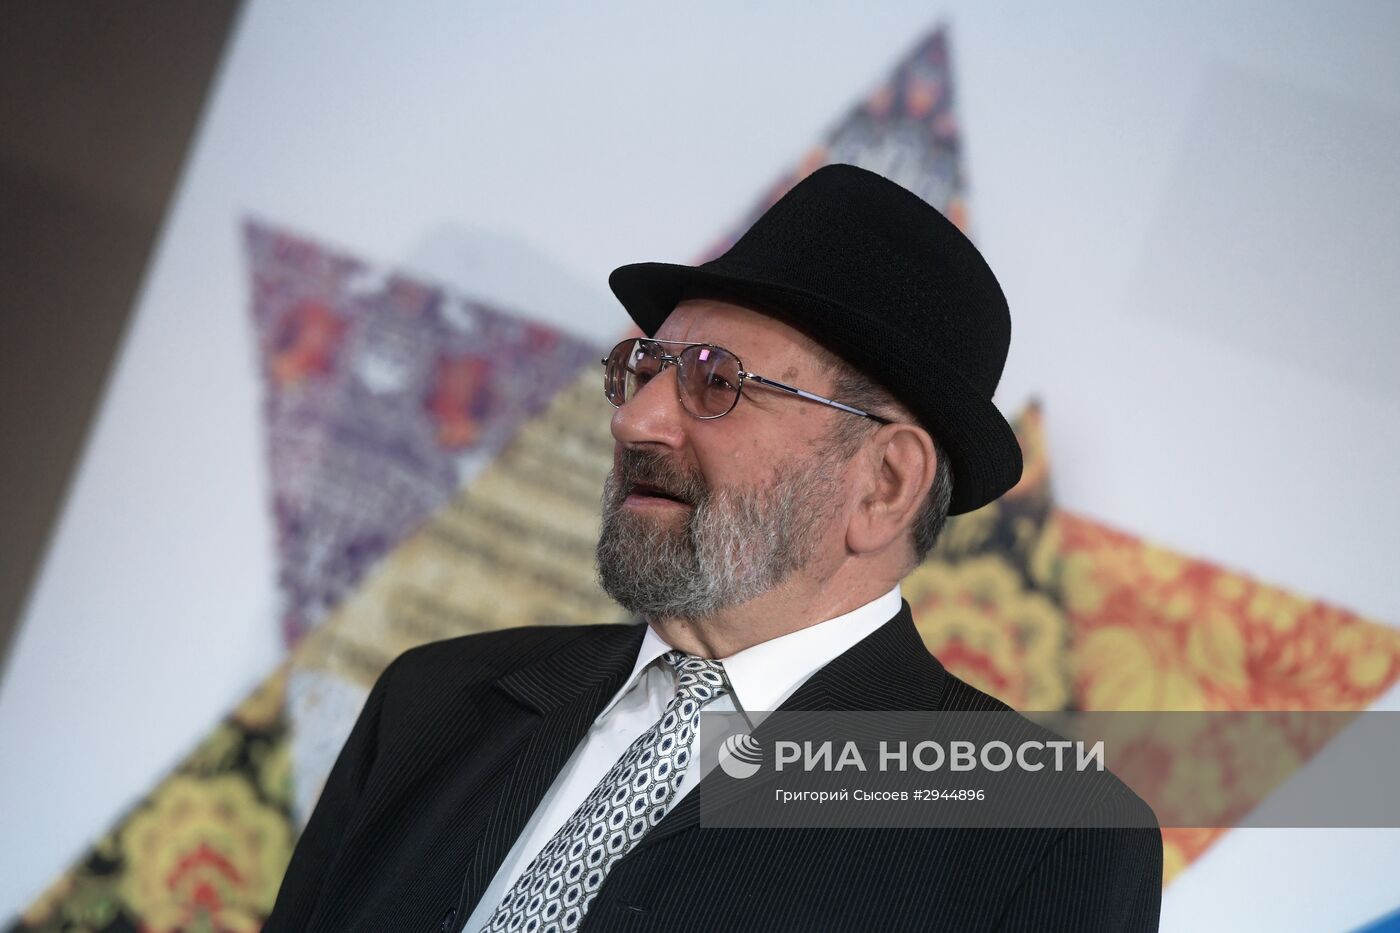 Гала-вечер, посвященный 20-летию Российского еврейского конгресса